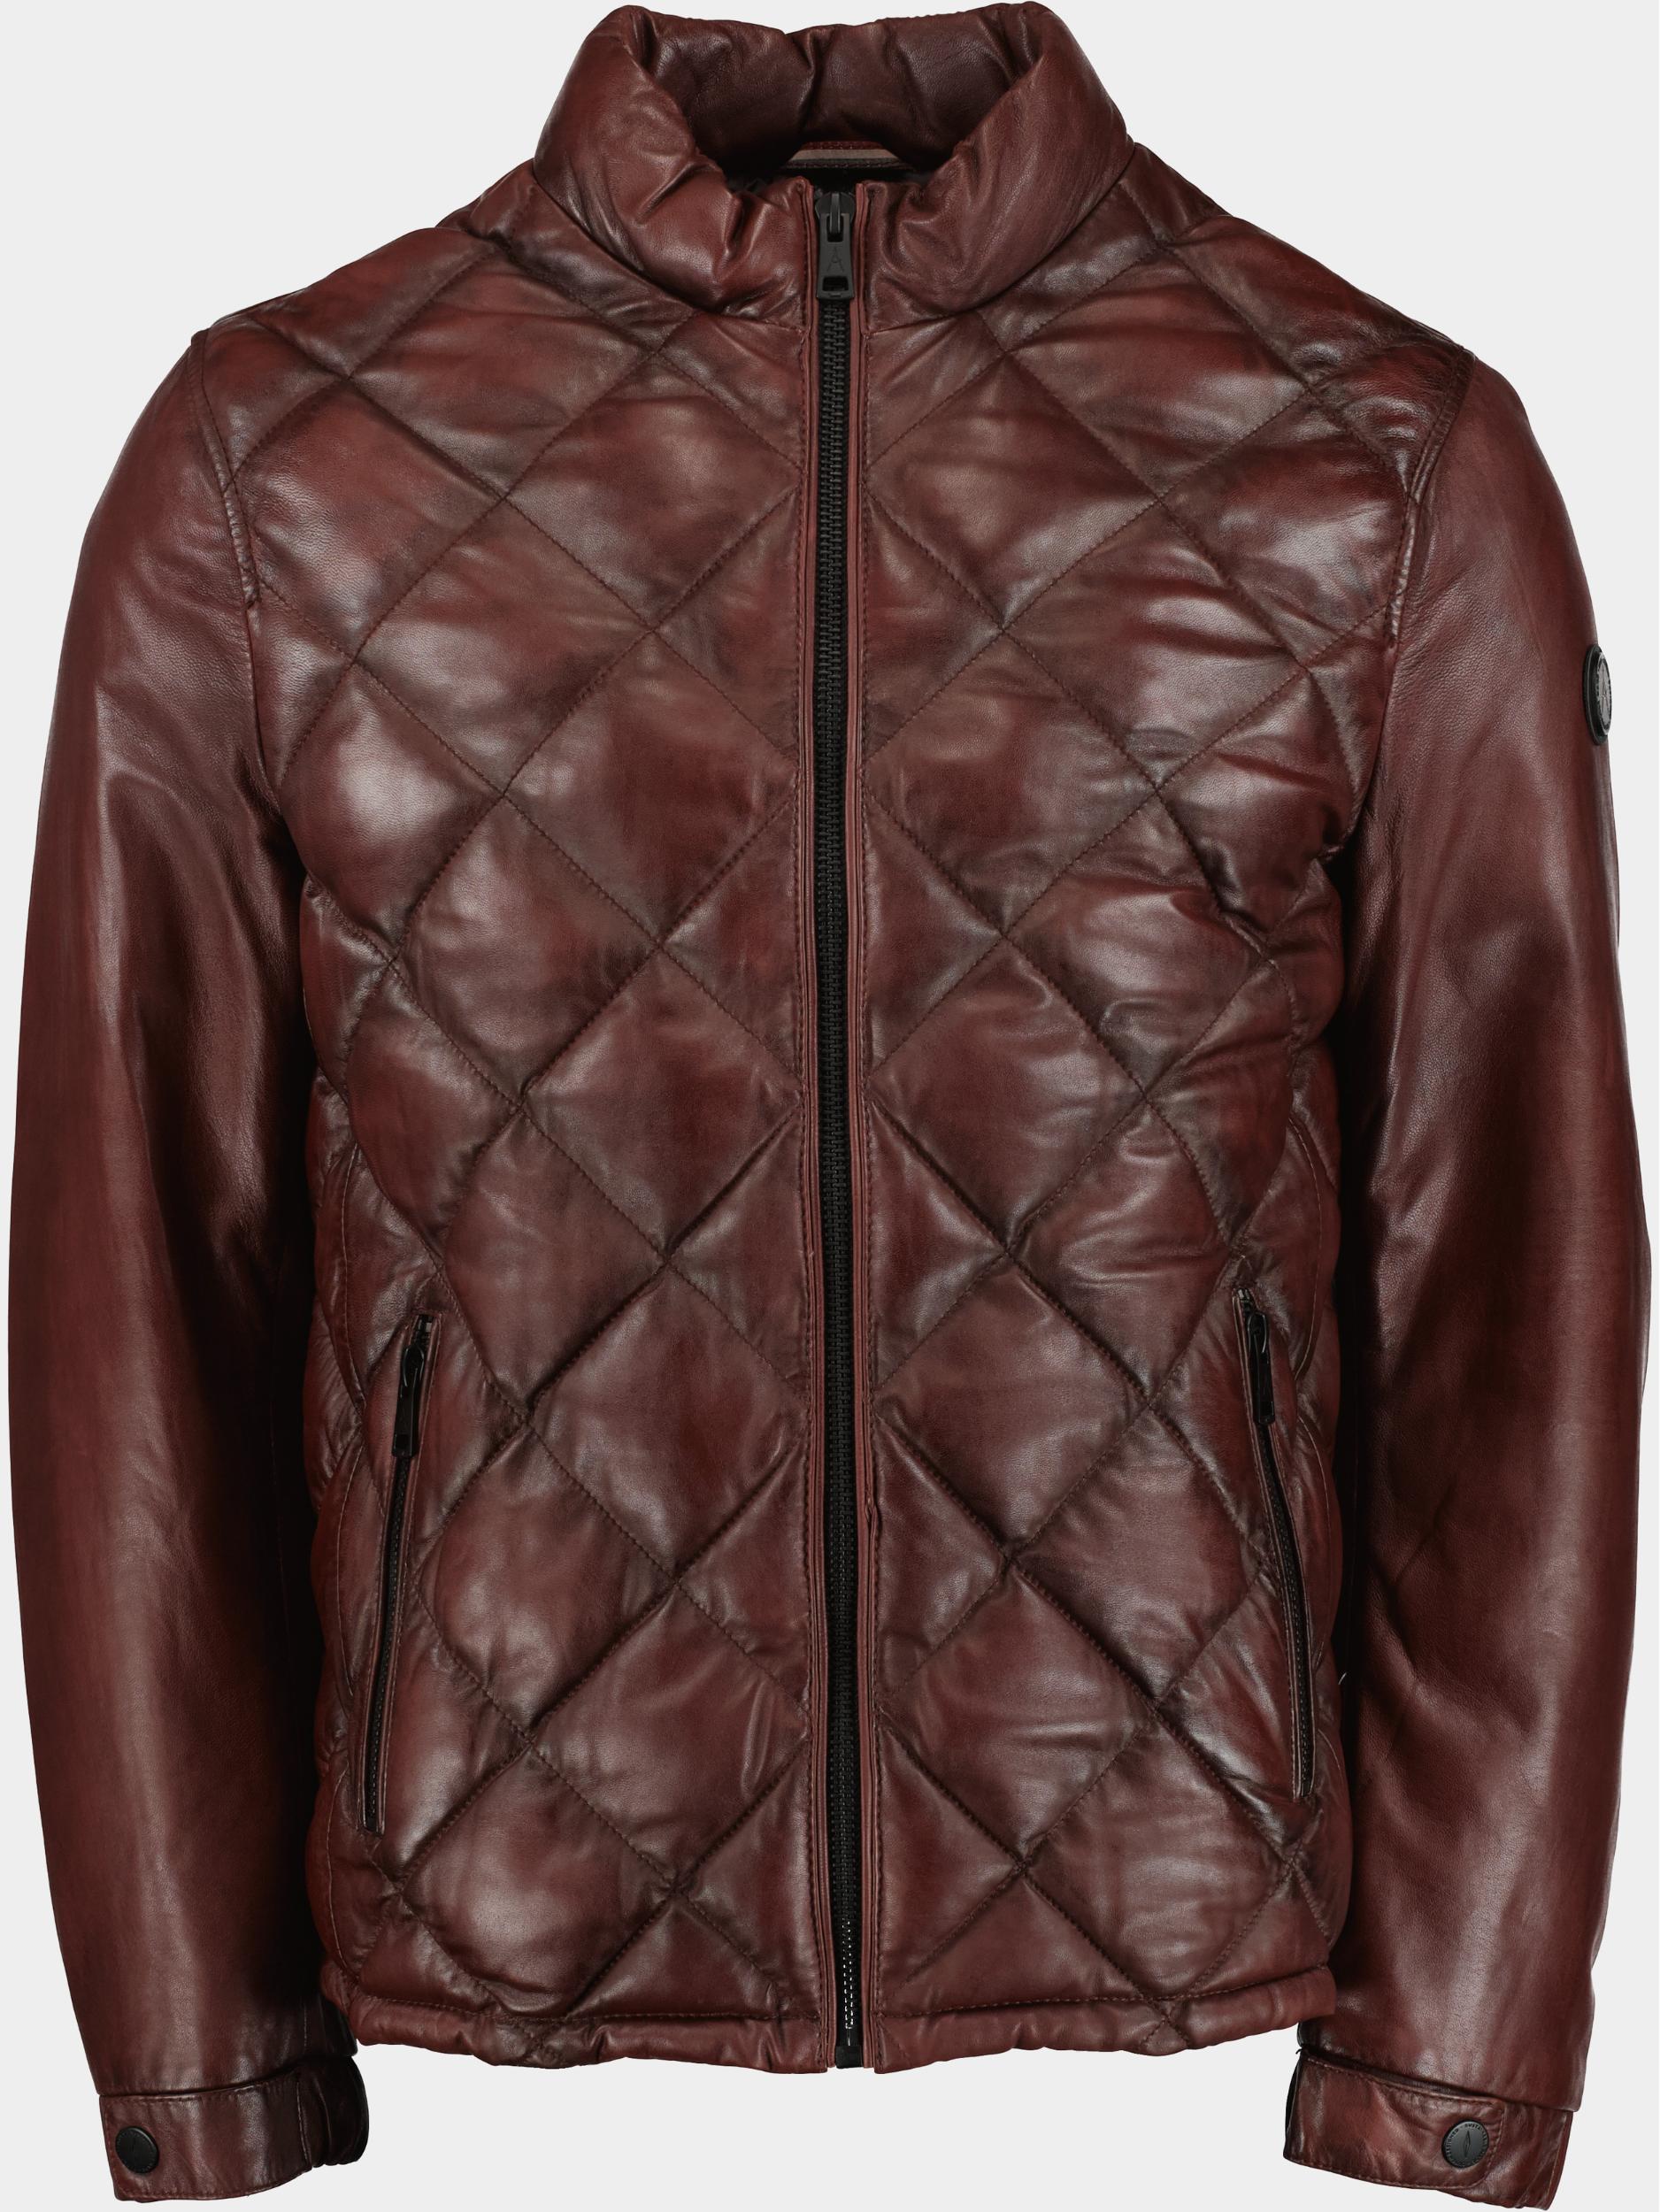 Donders 1860 Lederen Jack Bruin Leather Jacket 52332/551